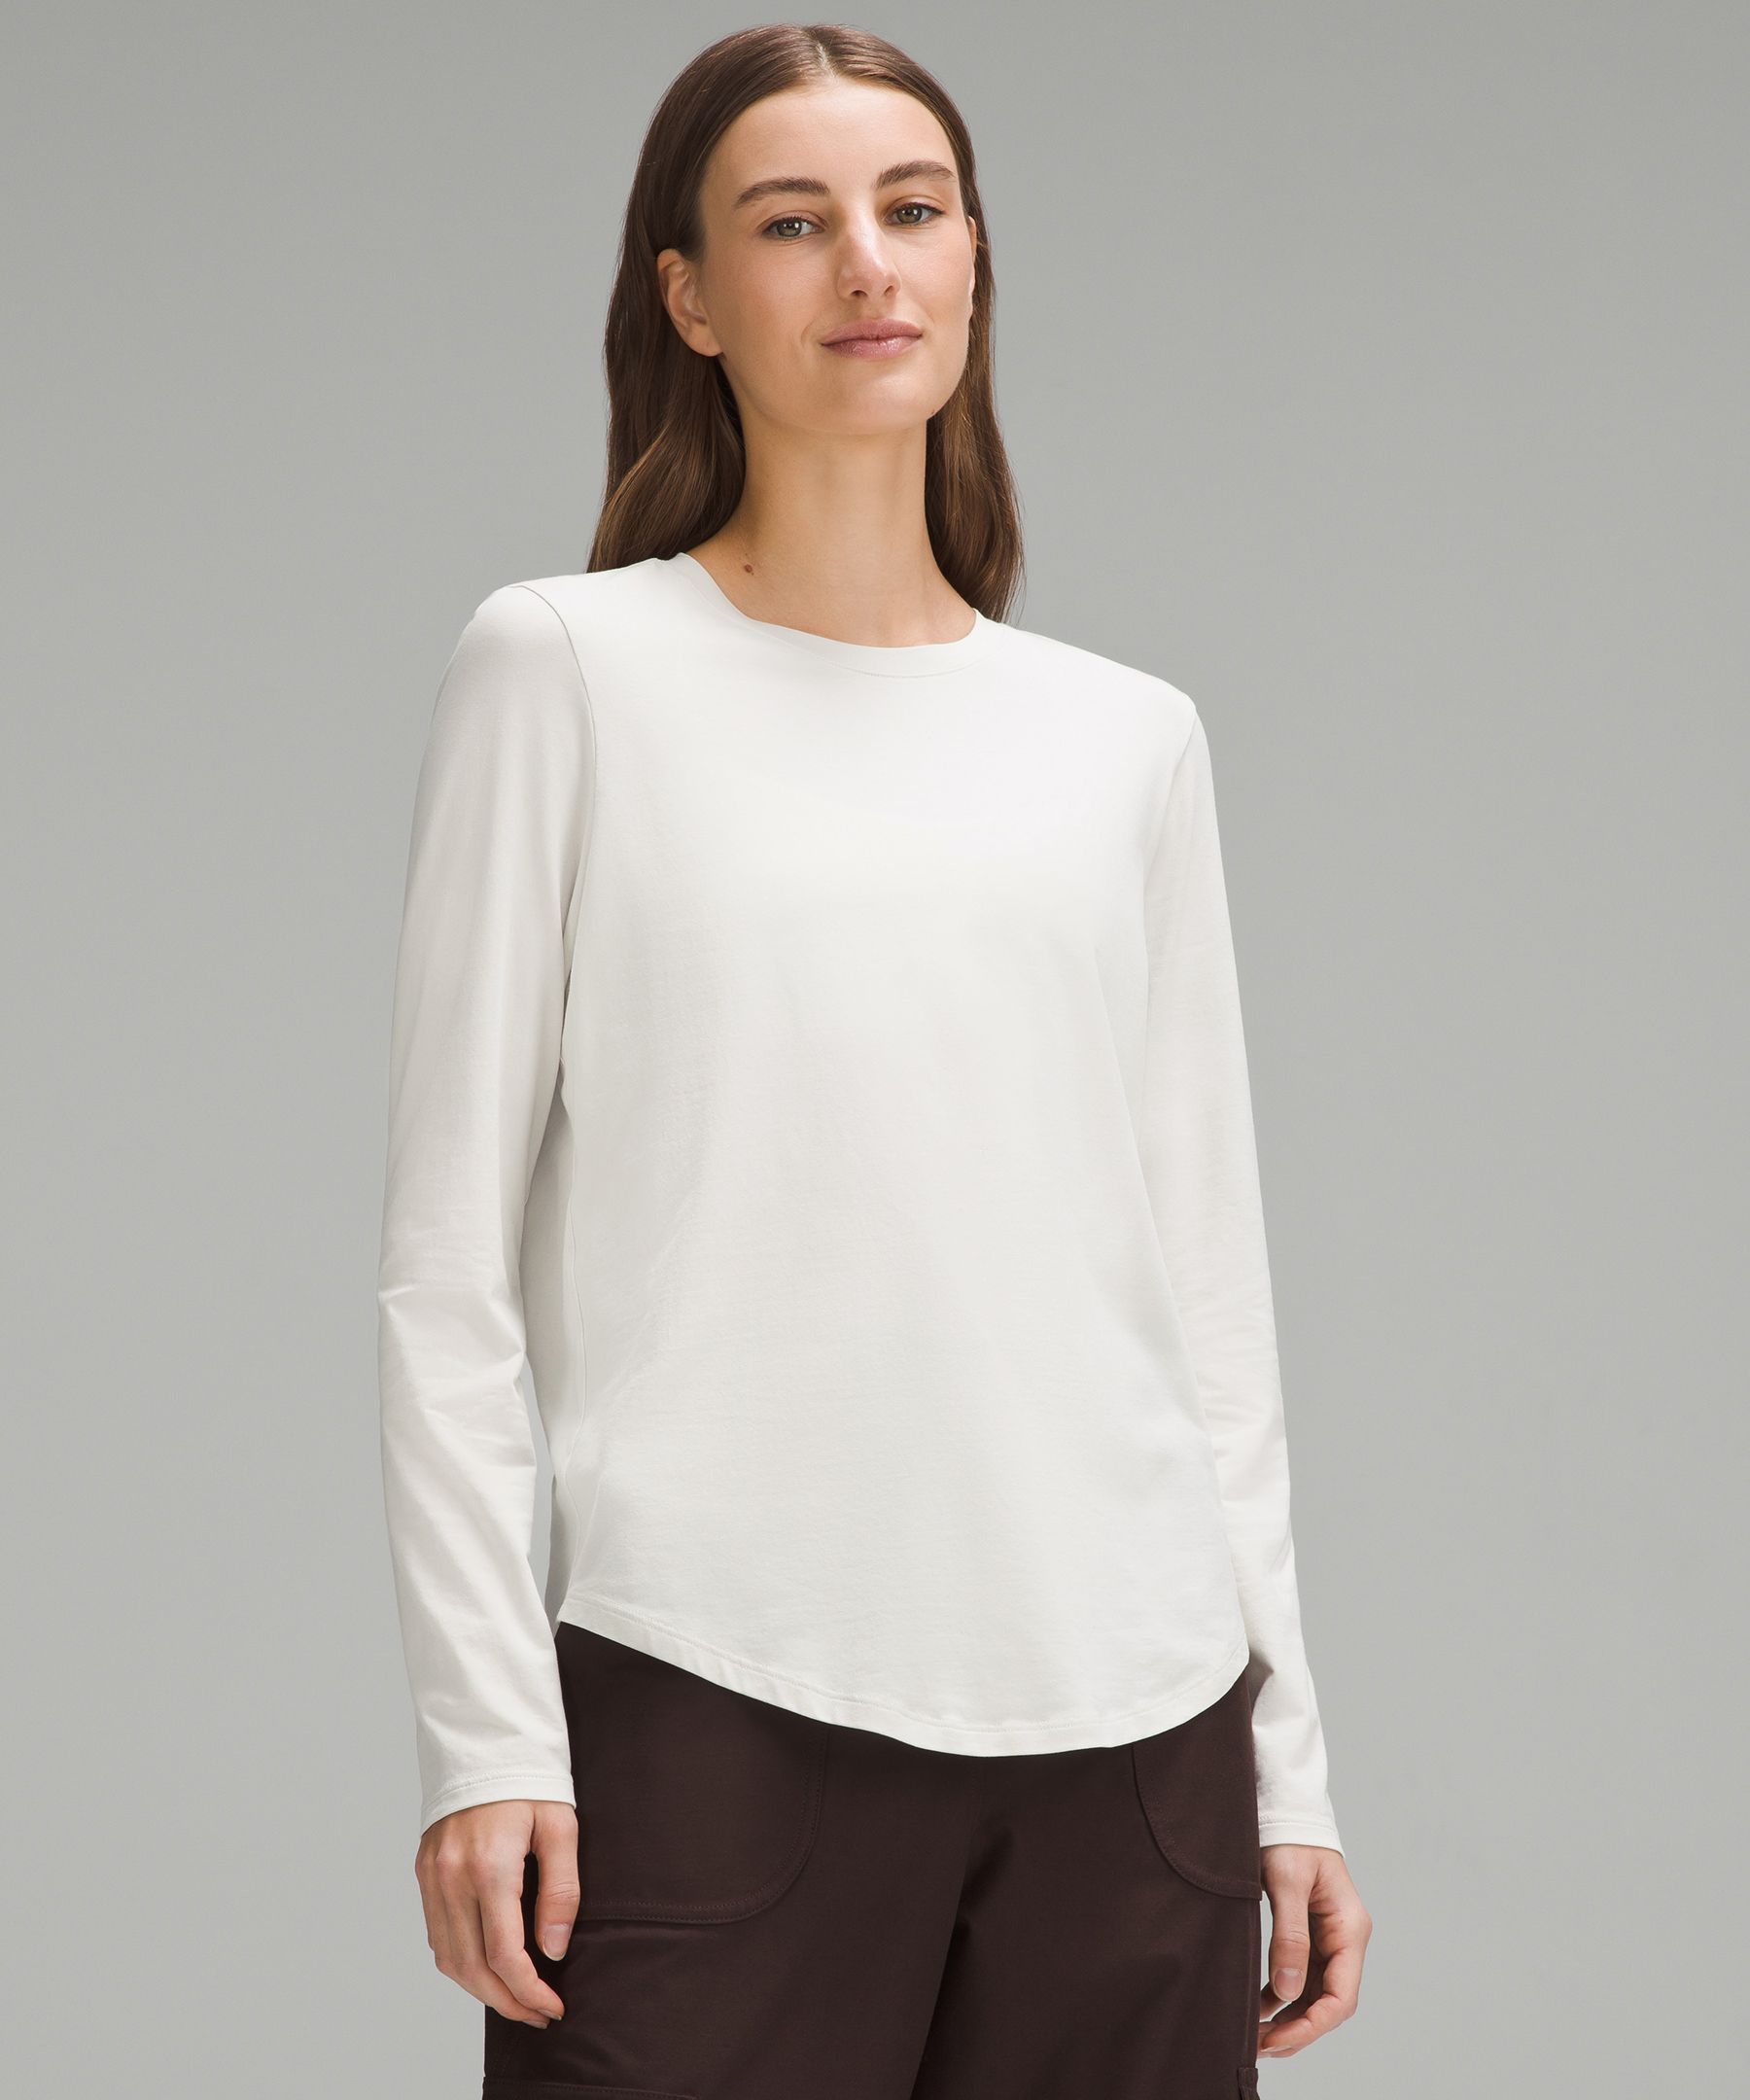 Lululemon Love Long-Sleeve Shirt - White - Size 14 Pima Cotton Fabric